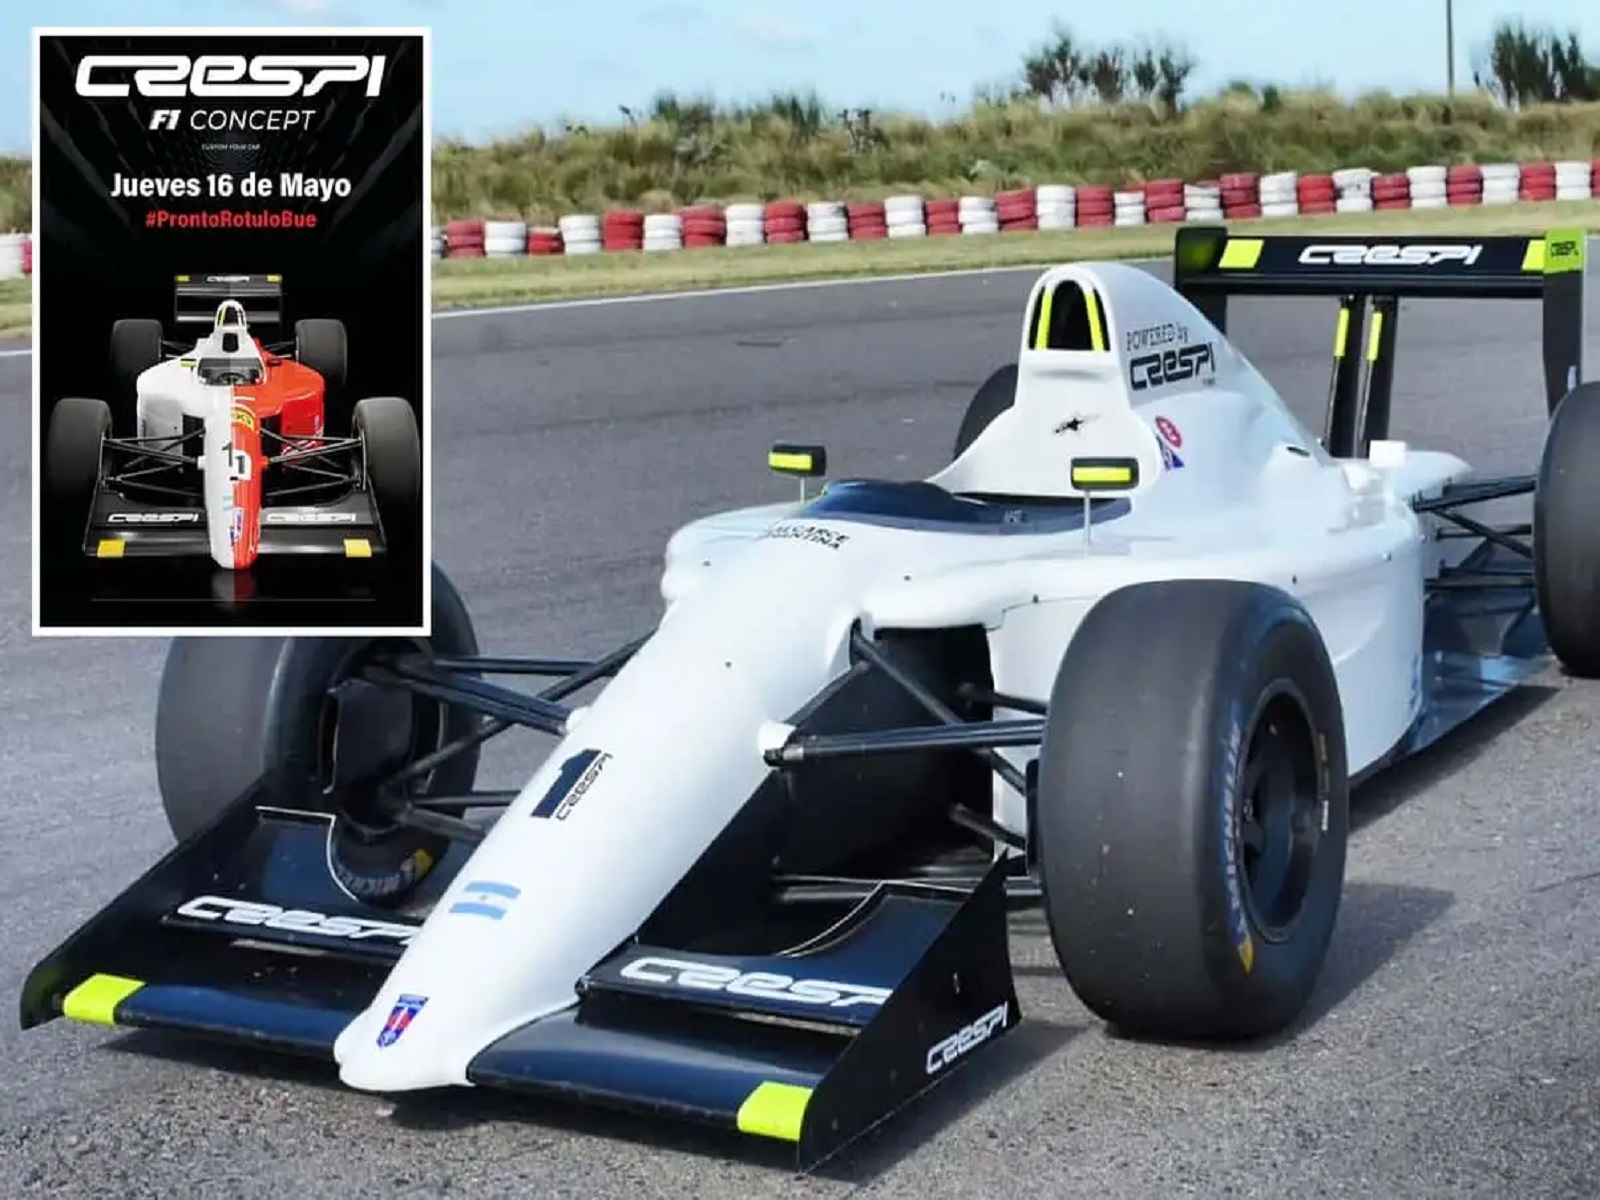 La familia Crespi presentará réplicas de Fórmula 1 inspirados en los que fabricaron para Netflix